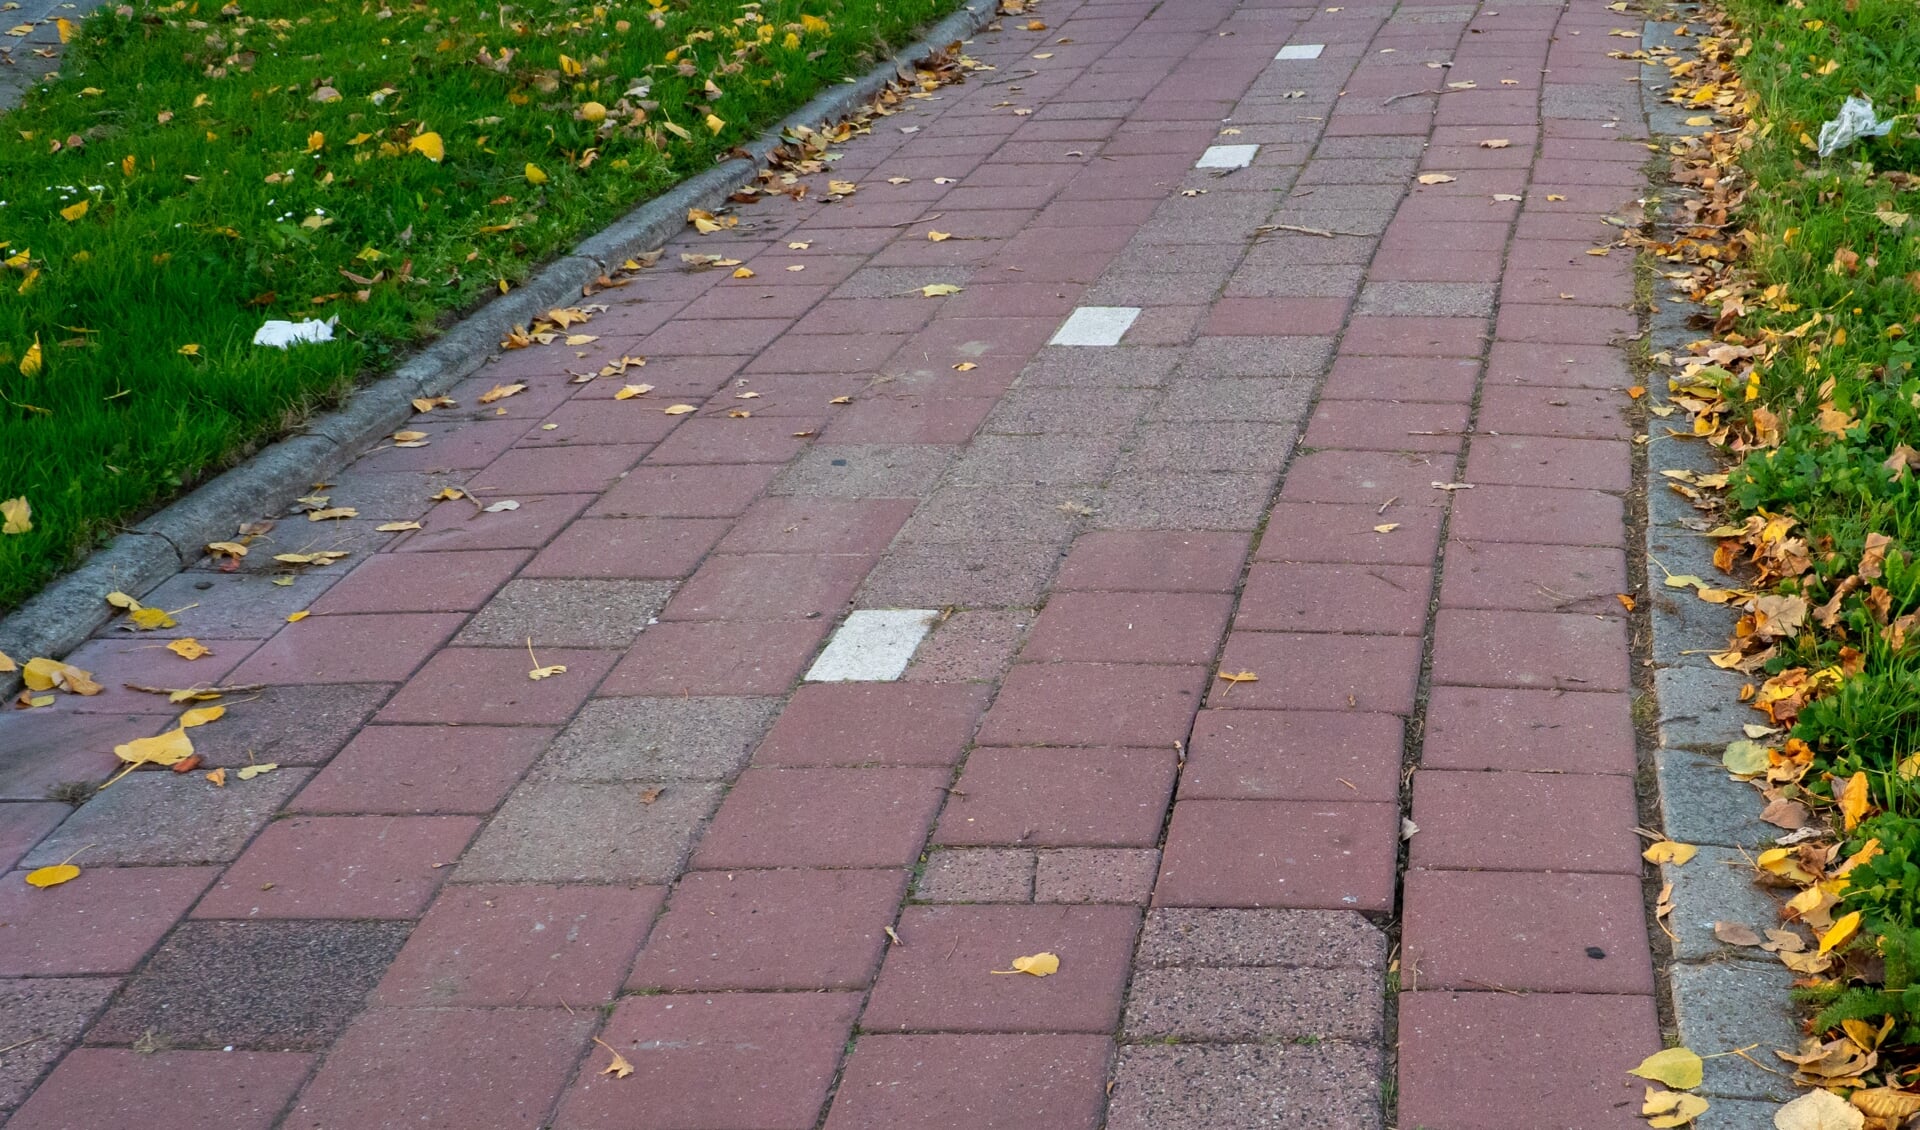 Als gevolg van de aanhoudende droogte kamt het fietspad langs de Engelendaal met losliggende tegels. 